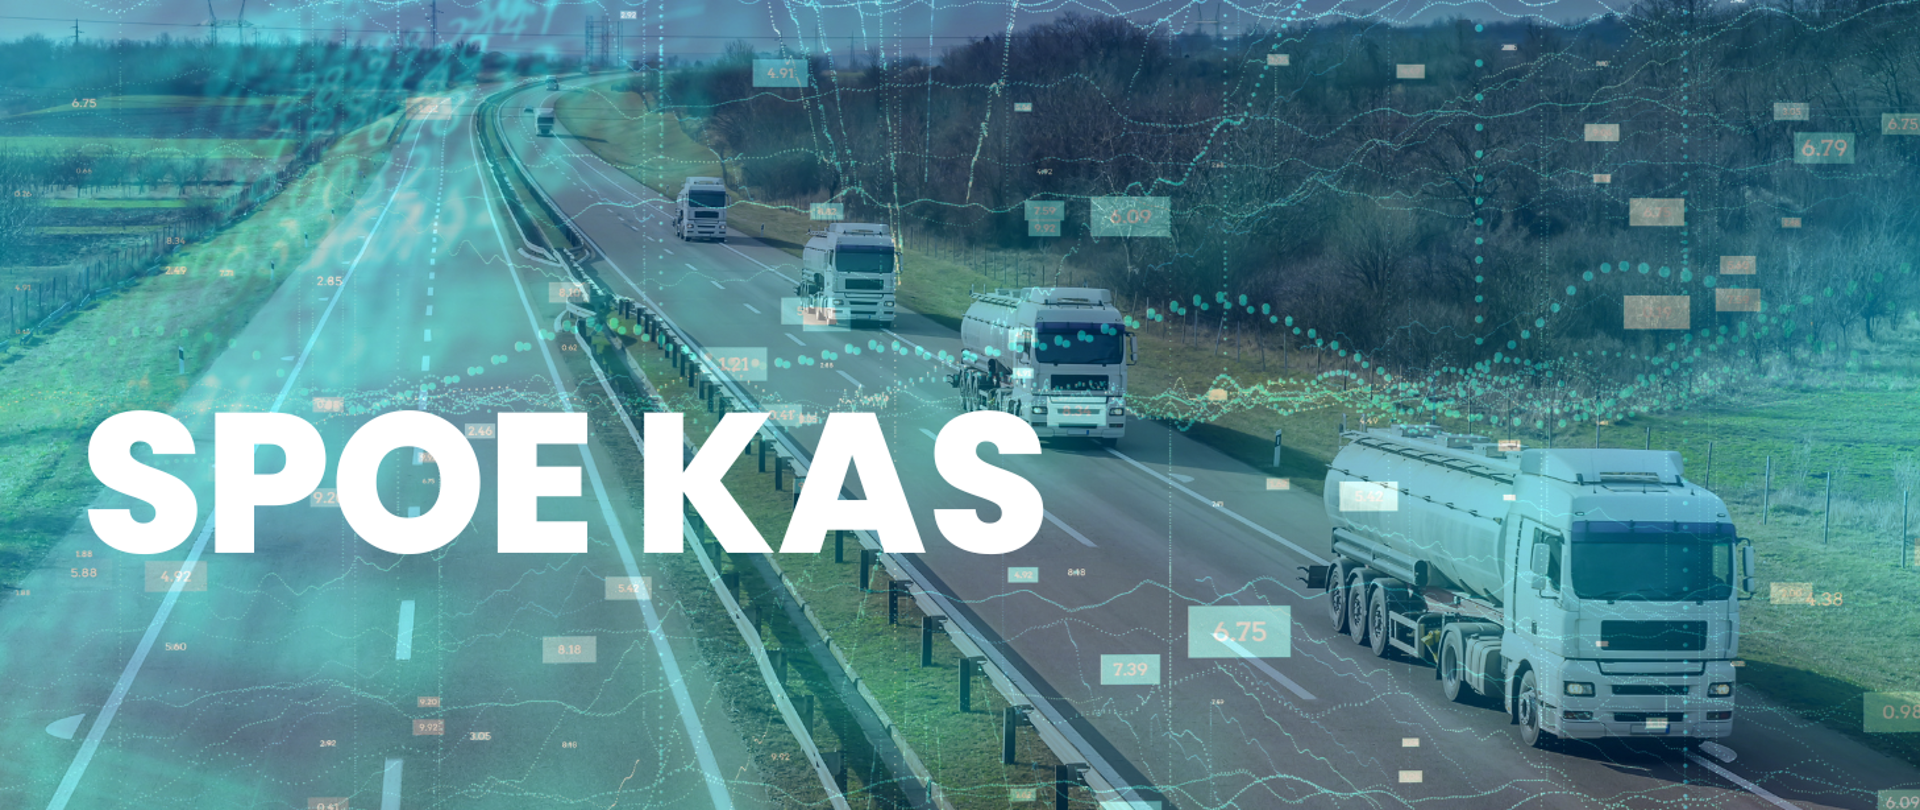 Ilustracja przedstawiająca zdjęcie autostrady i jadących po niej kilku ciężarówek. Na jego tle umieszczono półprzezroczyste elementy graficzne: ciągi liczb i wykresy. Na pierwszym planie po lewej stronie duży biały napis: SPOE KAS.